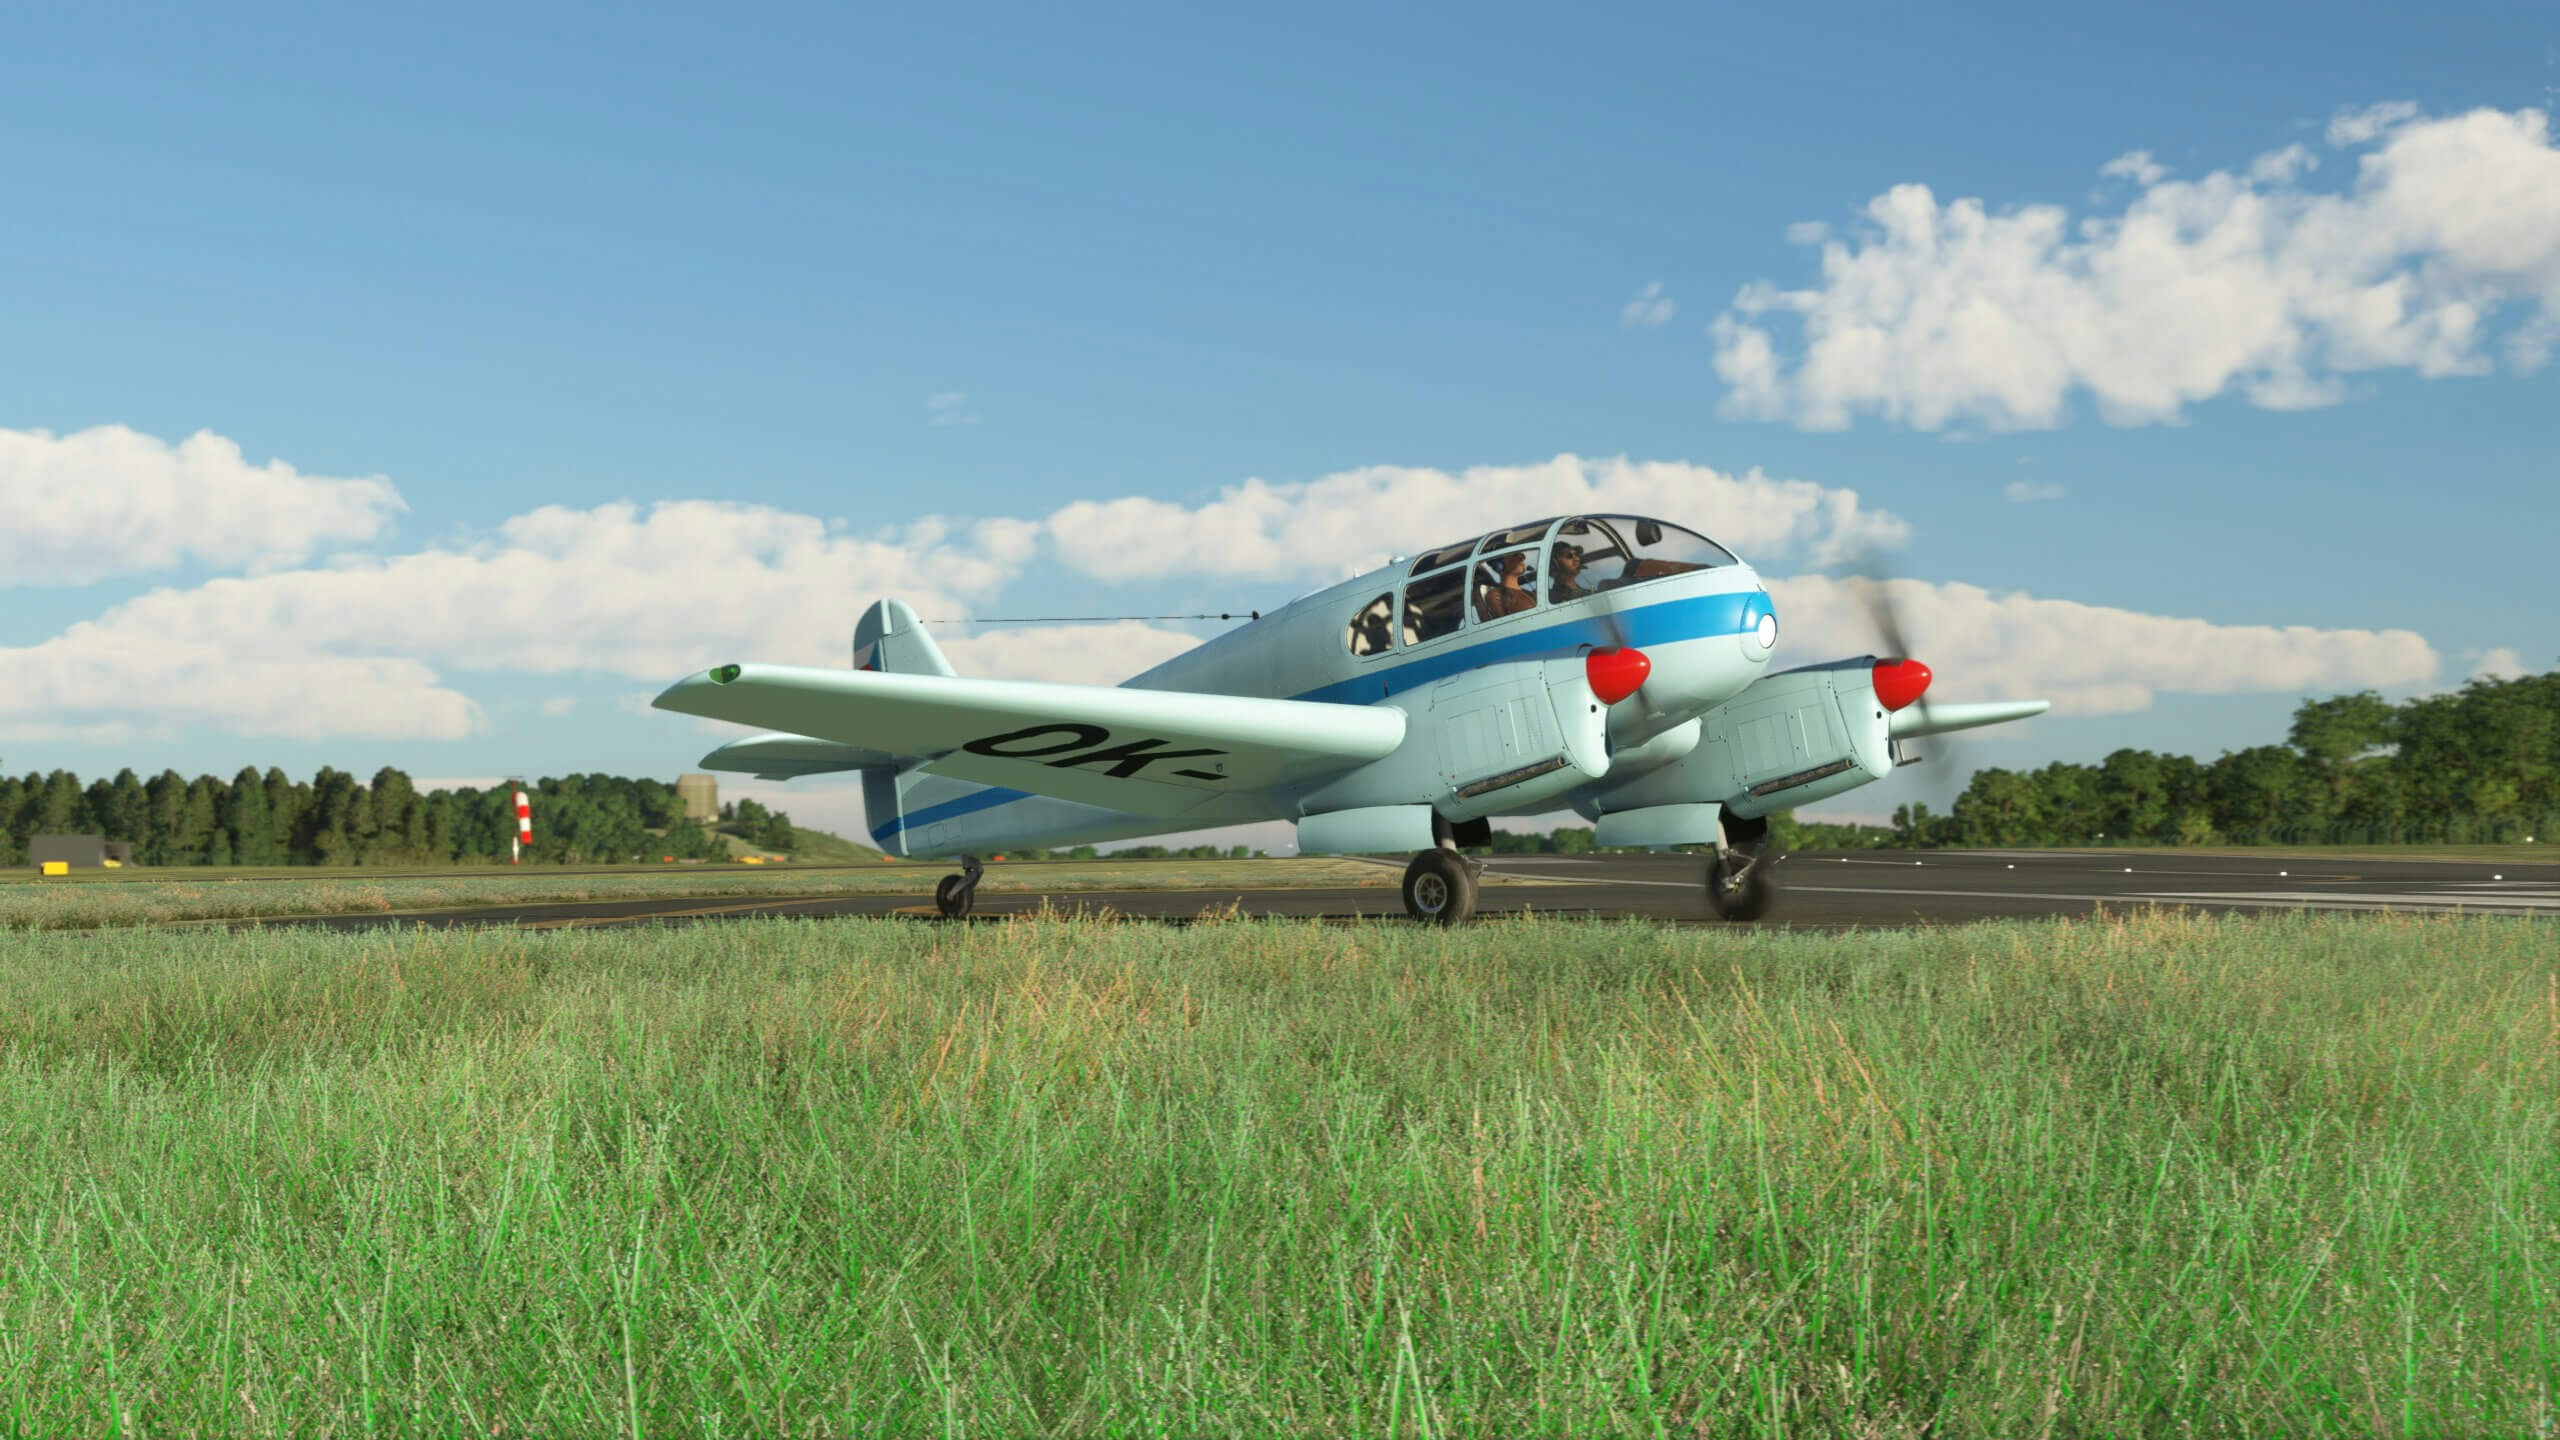 Microsoft Releases Local Legend 11: Aero Vodochody Ae-45 and Ae-145